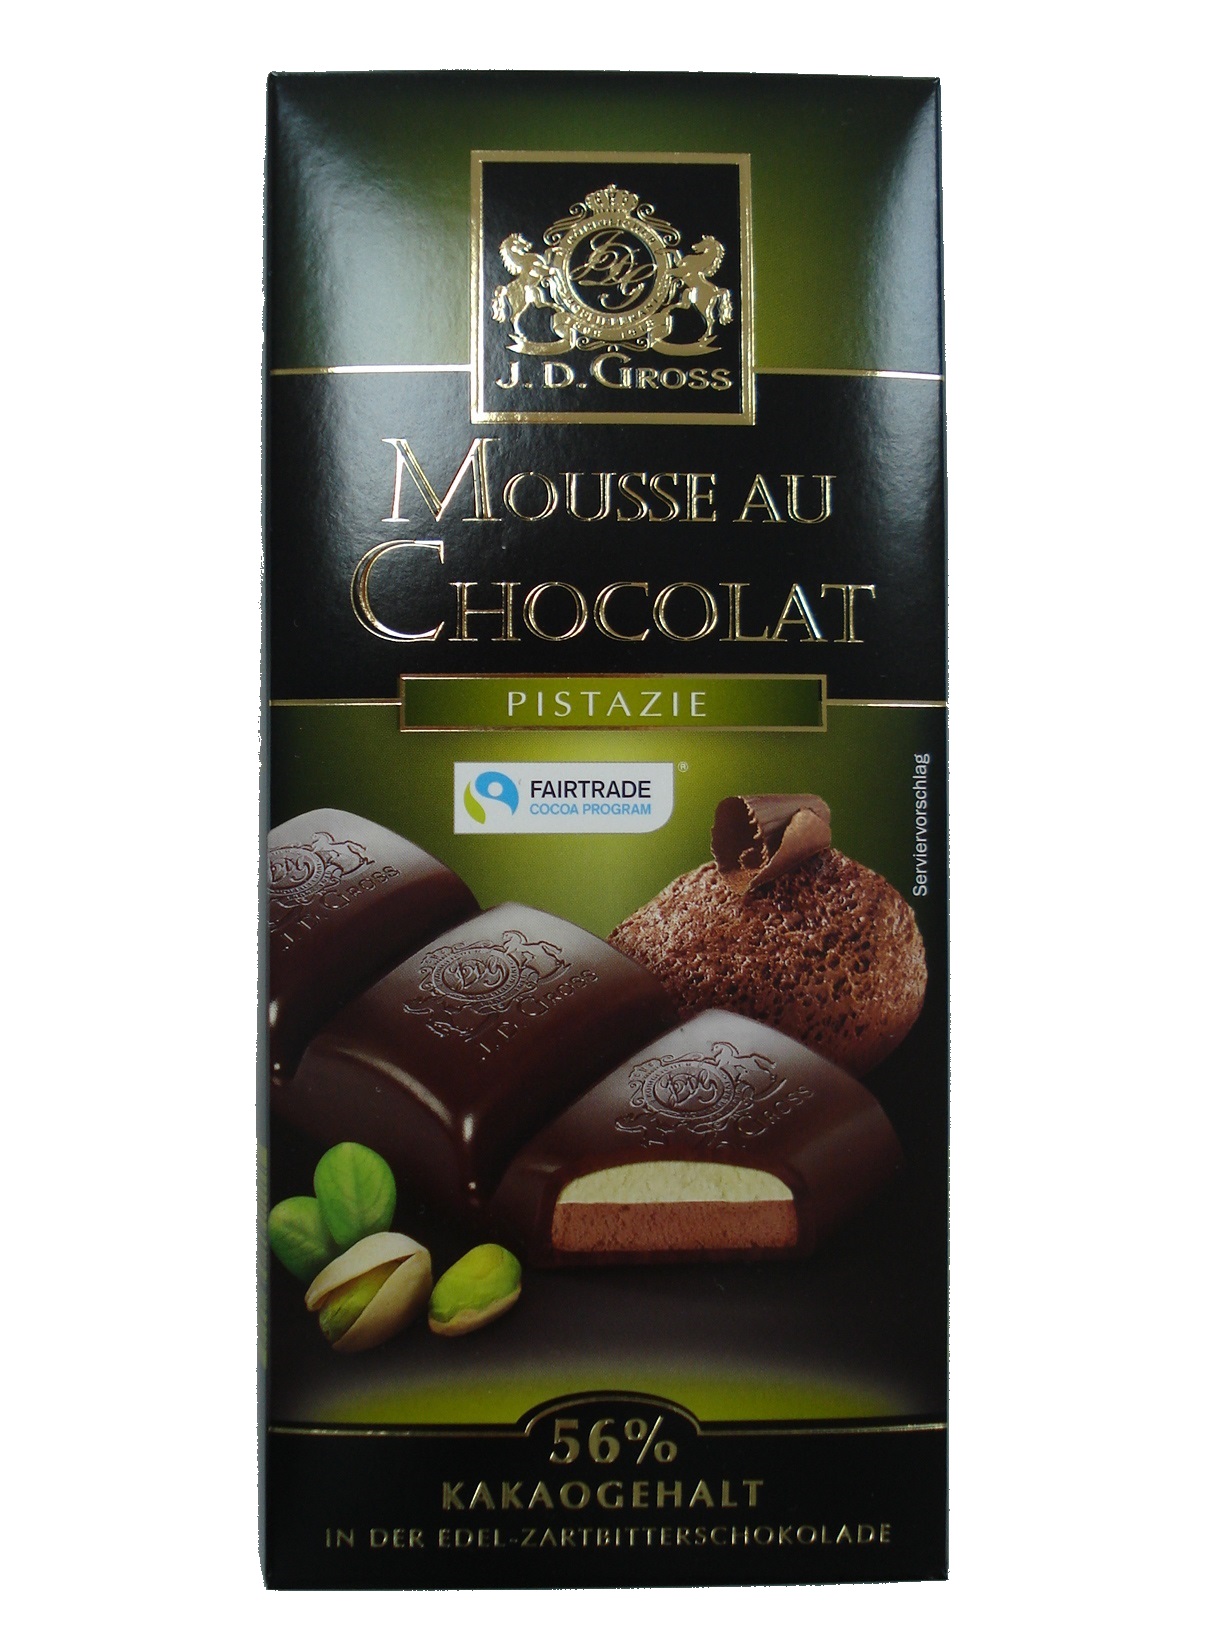 J.D. Gross Mousse au Chocolat Pistazie-